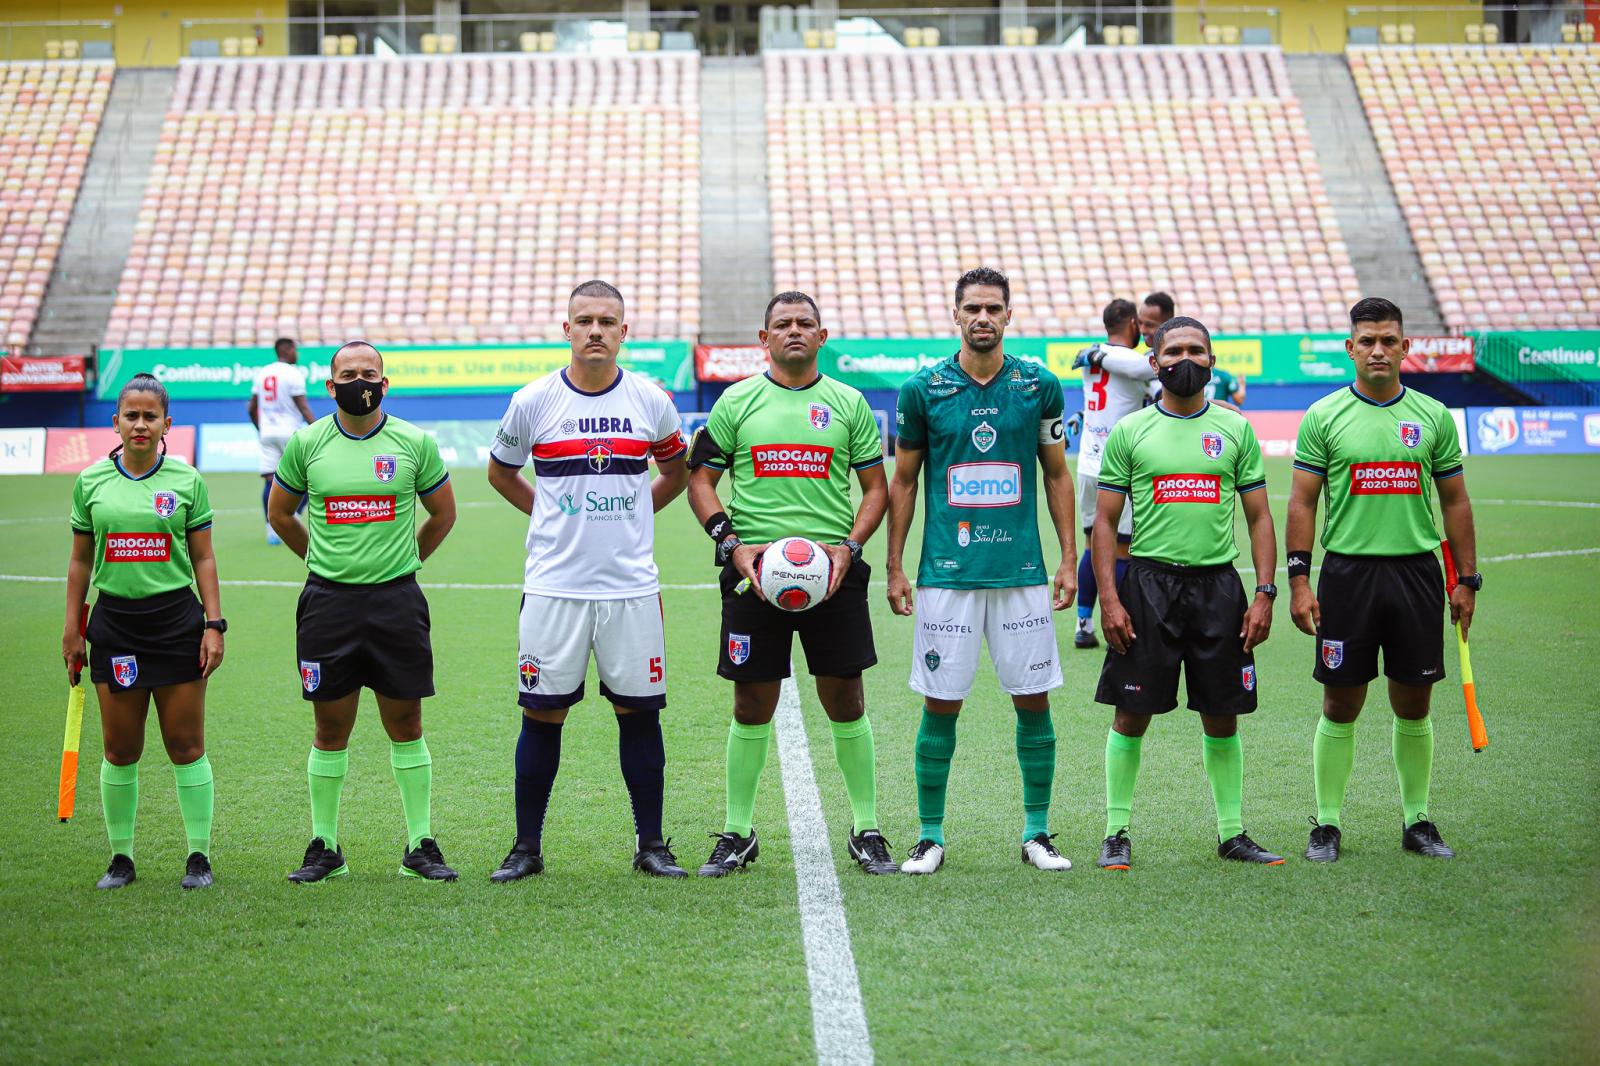 VAR no Amazonense agrada o Manaus FC: “Já é um avanço”, diz VP de futebol do clube